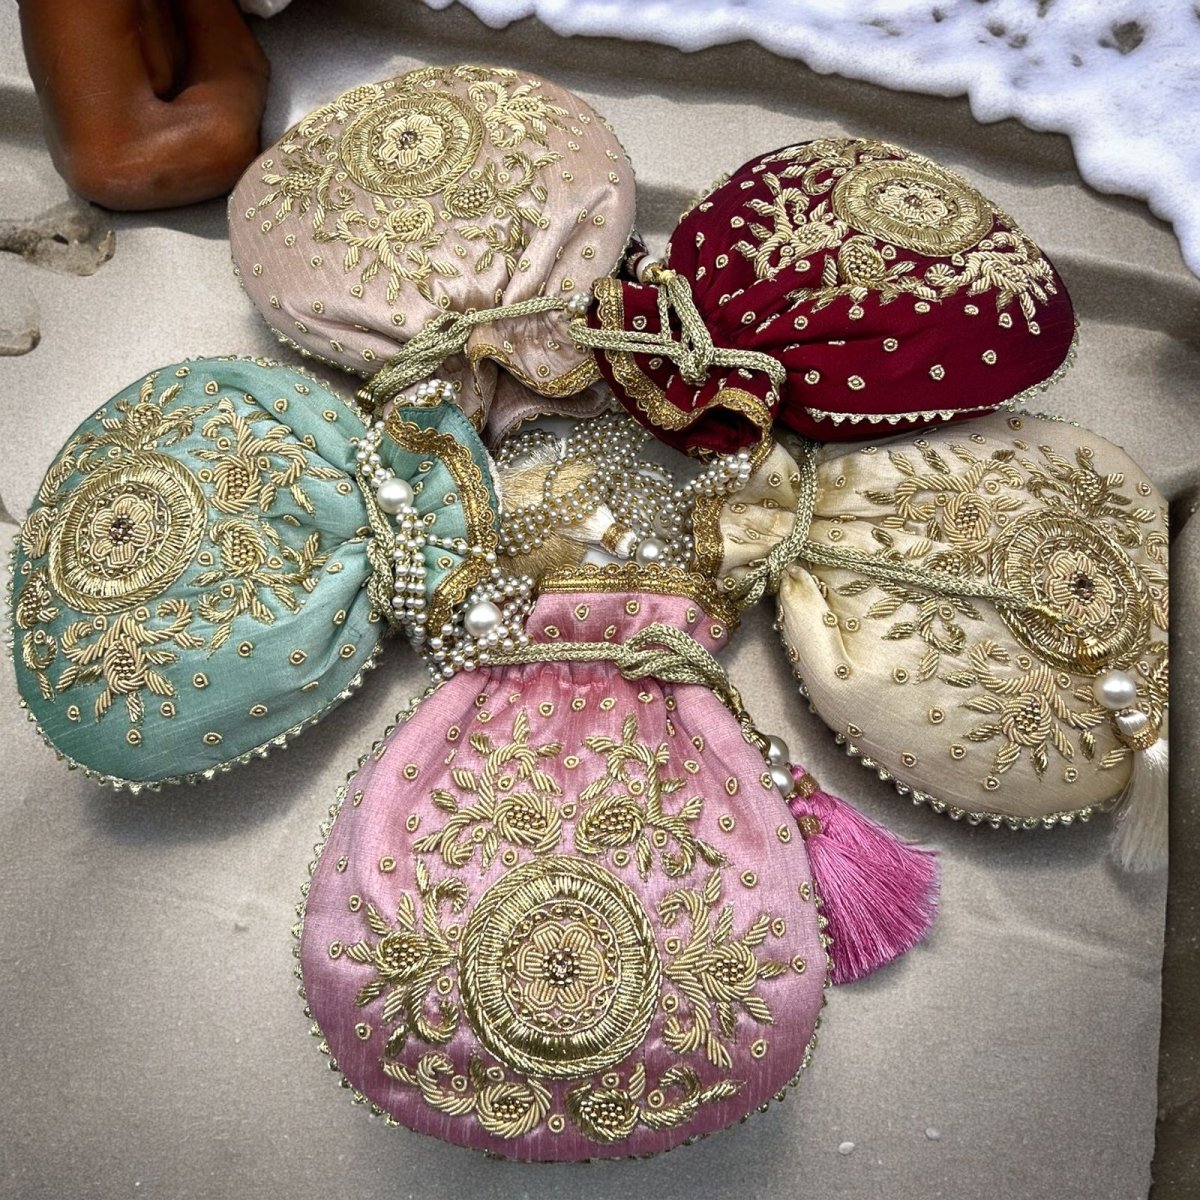 #product_La Reat Kora Women's Bridal Fancy Party Hand Embroidery Potli Bags in Maroon - La Reat